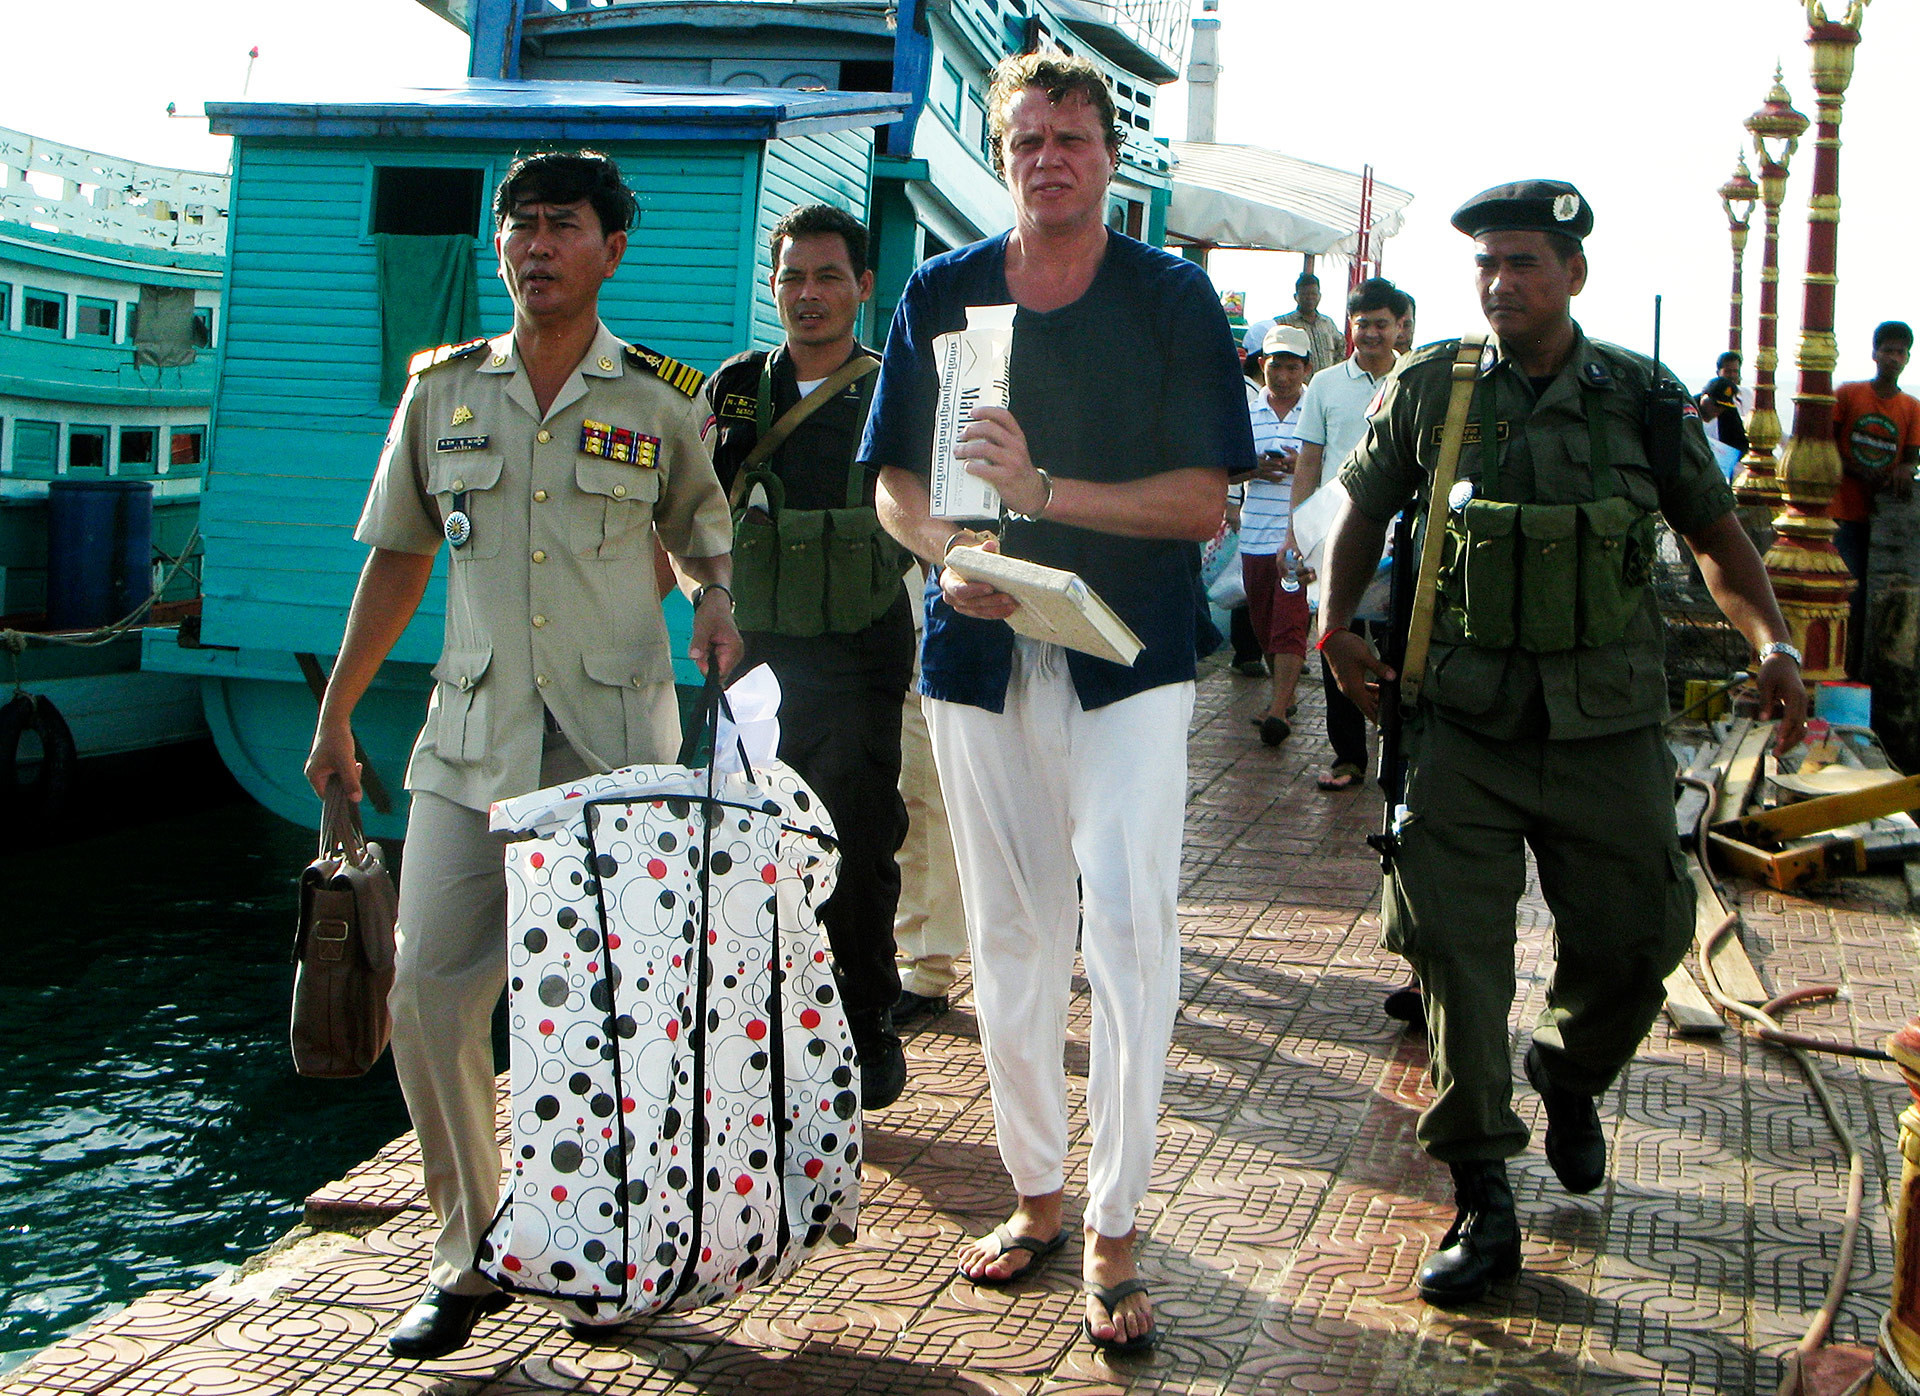 Polonski escoltado por policiais no Camboja